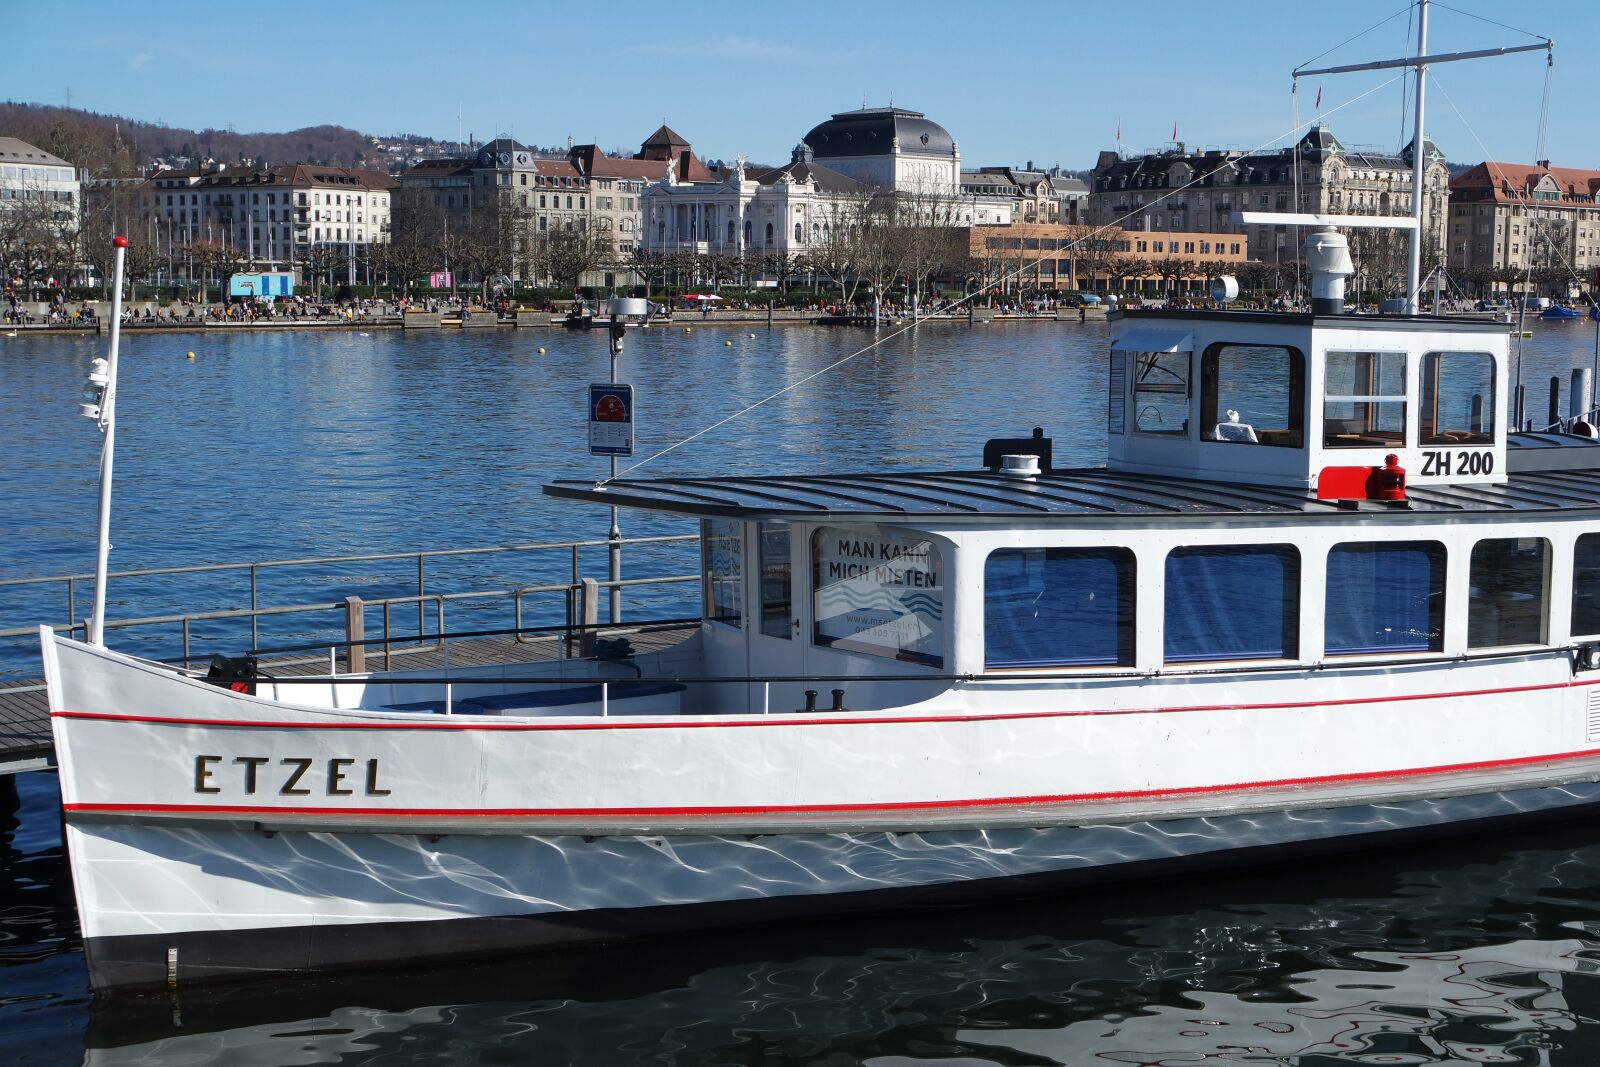 Samsung NX3000 sample photo. Zurich, lake zurich, lake photography